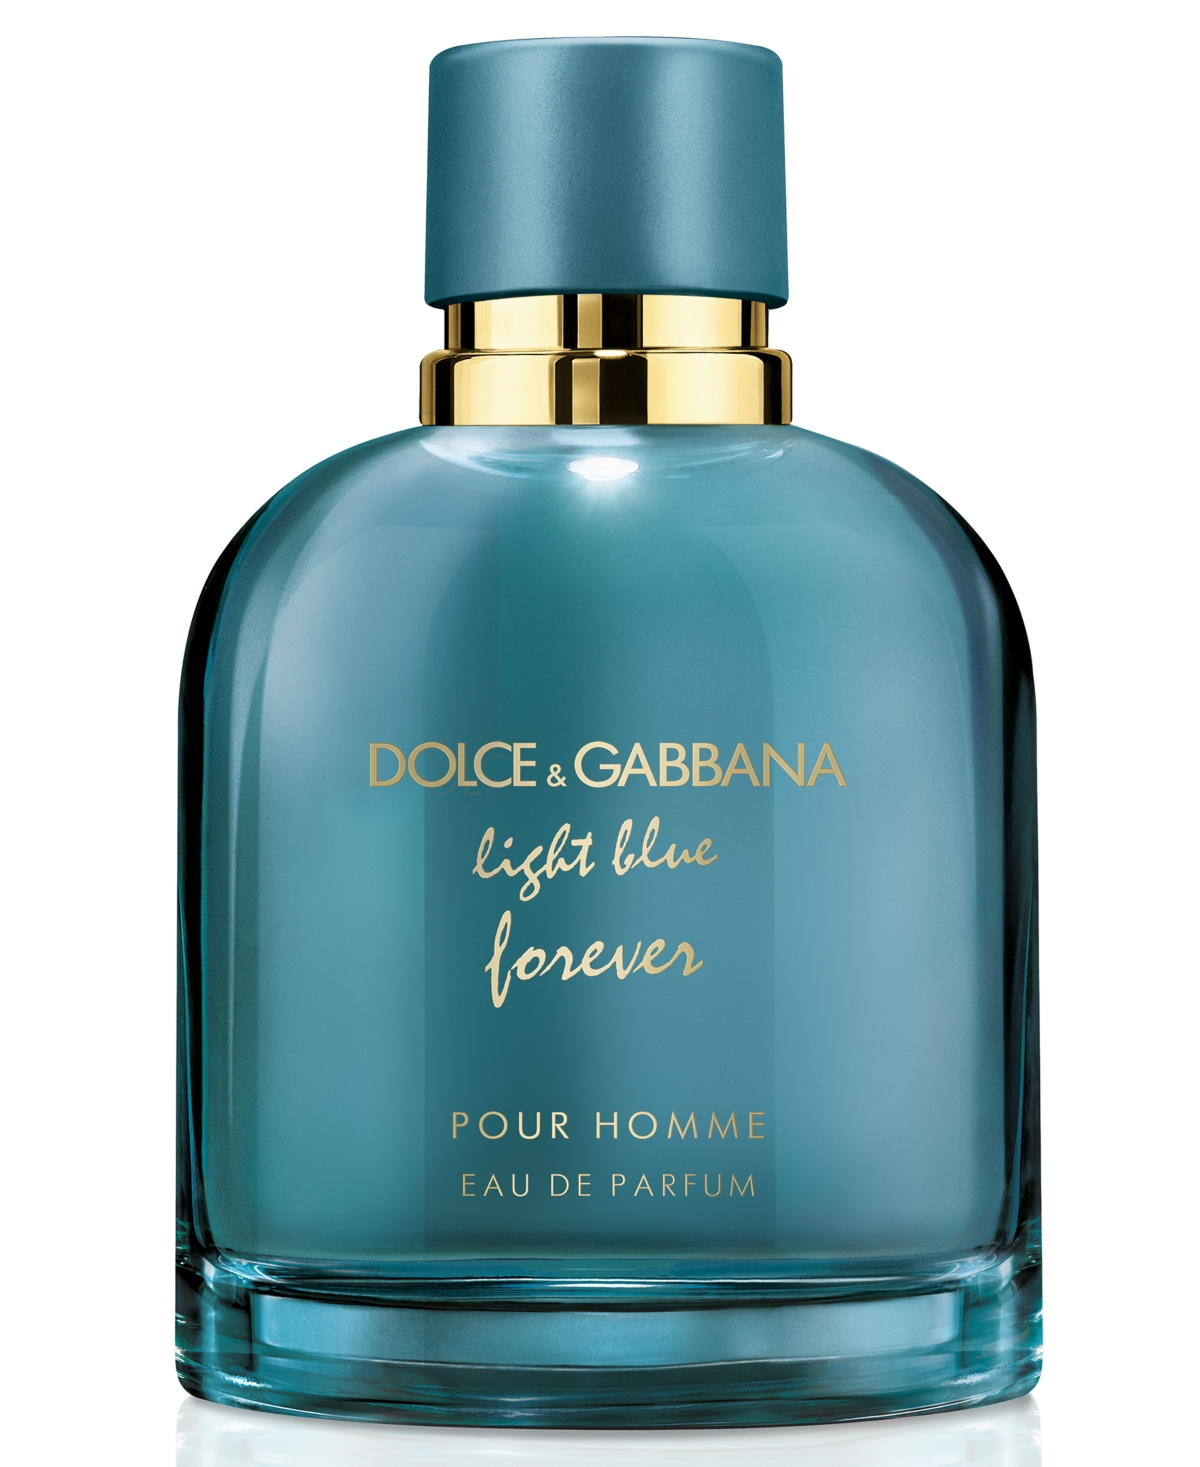 Dolce & Gabbana DOLCE&GABBANA Men's Light Blue Forever Pour Homme Eau de  Parfum Spray, . & Reviews - Cologne - Beauty - Macy's